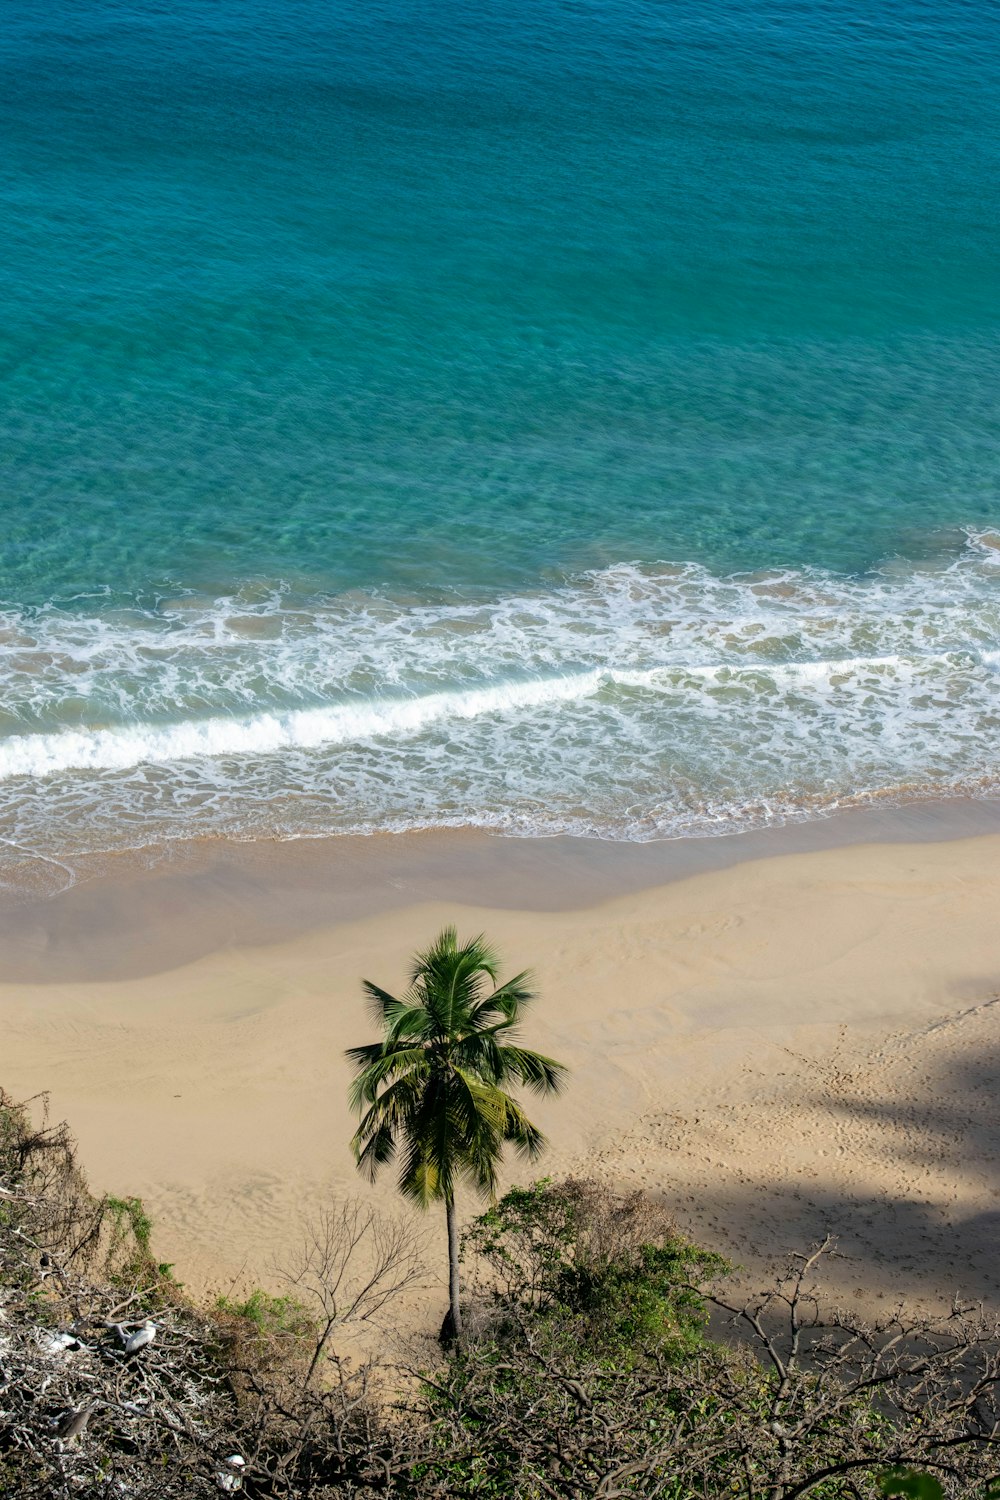 a lone palm tree on a beach near the ocean